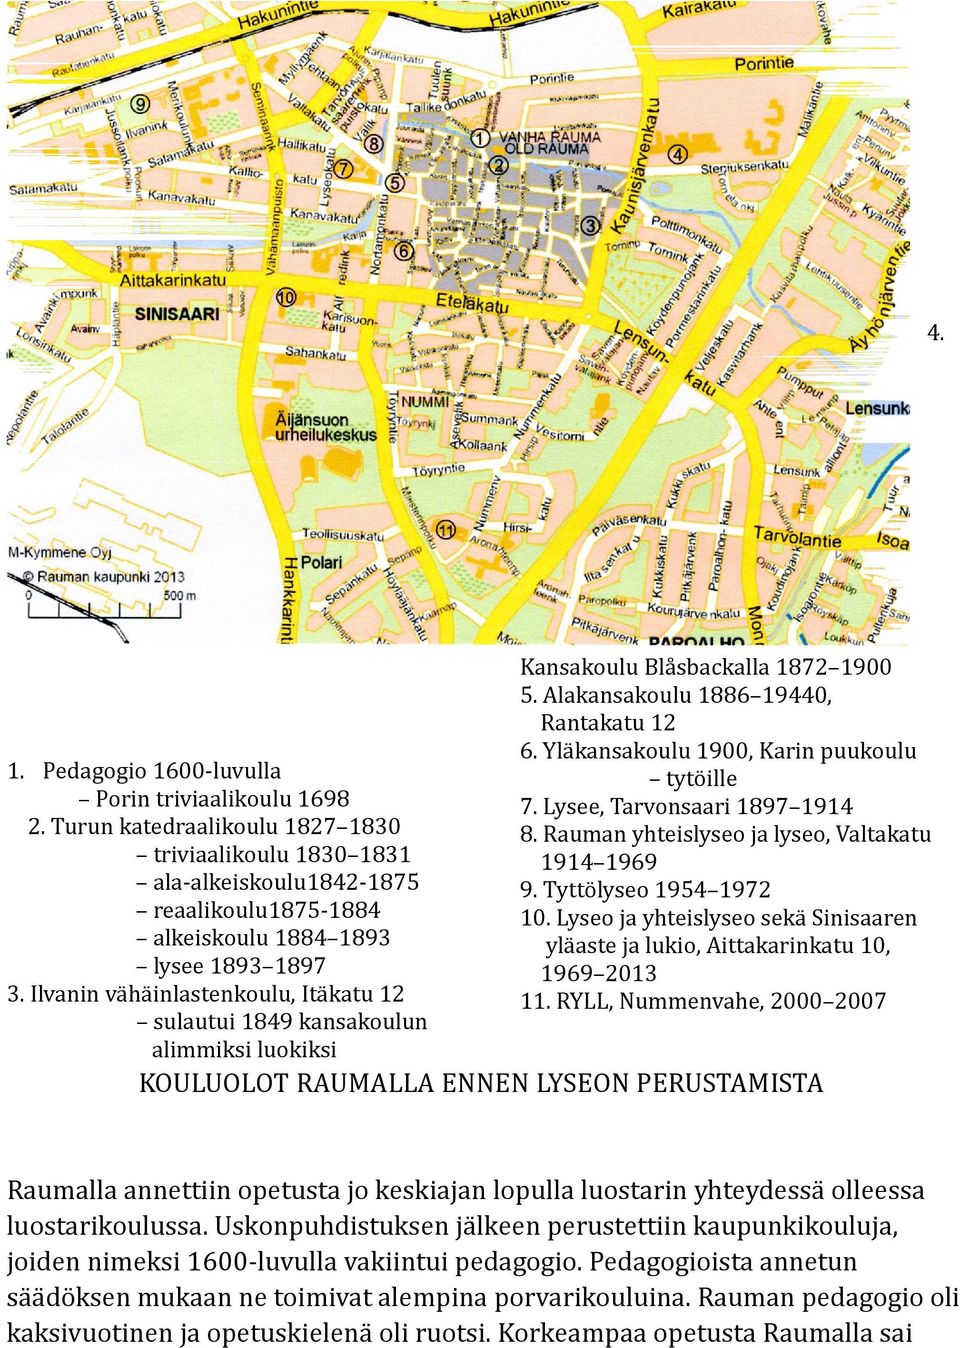 Ilvanin vähäinlastenkoulu, Itäkatu 12 sulautui 1849 kansakoulun alimmiksi luokiksi Kansakoulu Blåsbackalla 1872 1900 5. Alakansakoulu 1886 19440, Rantakatu 12 6.